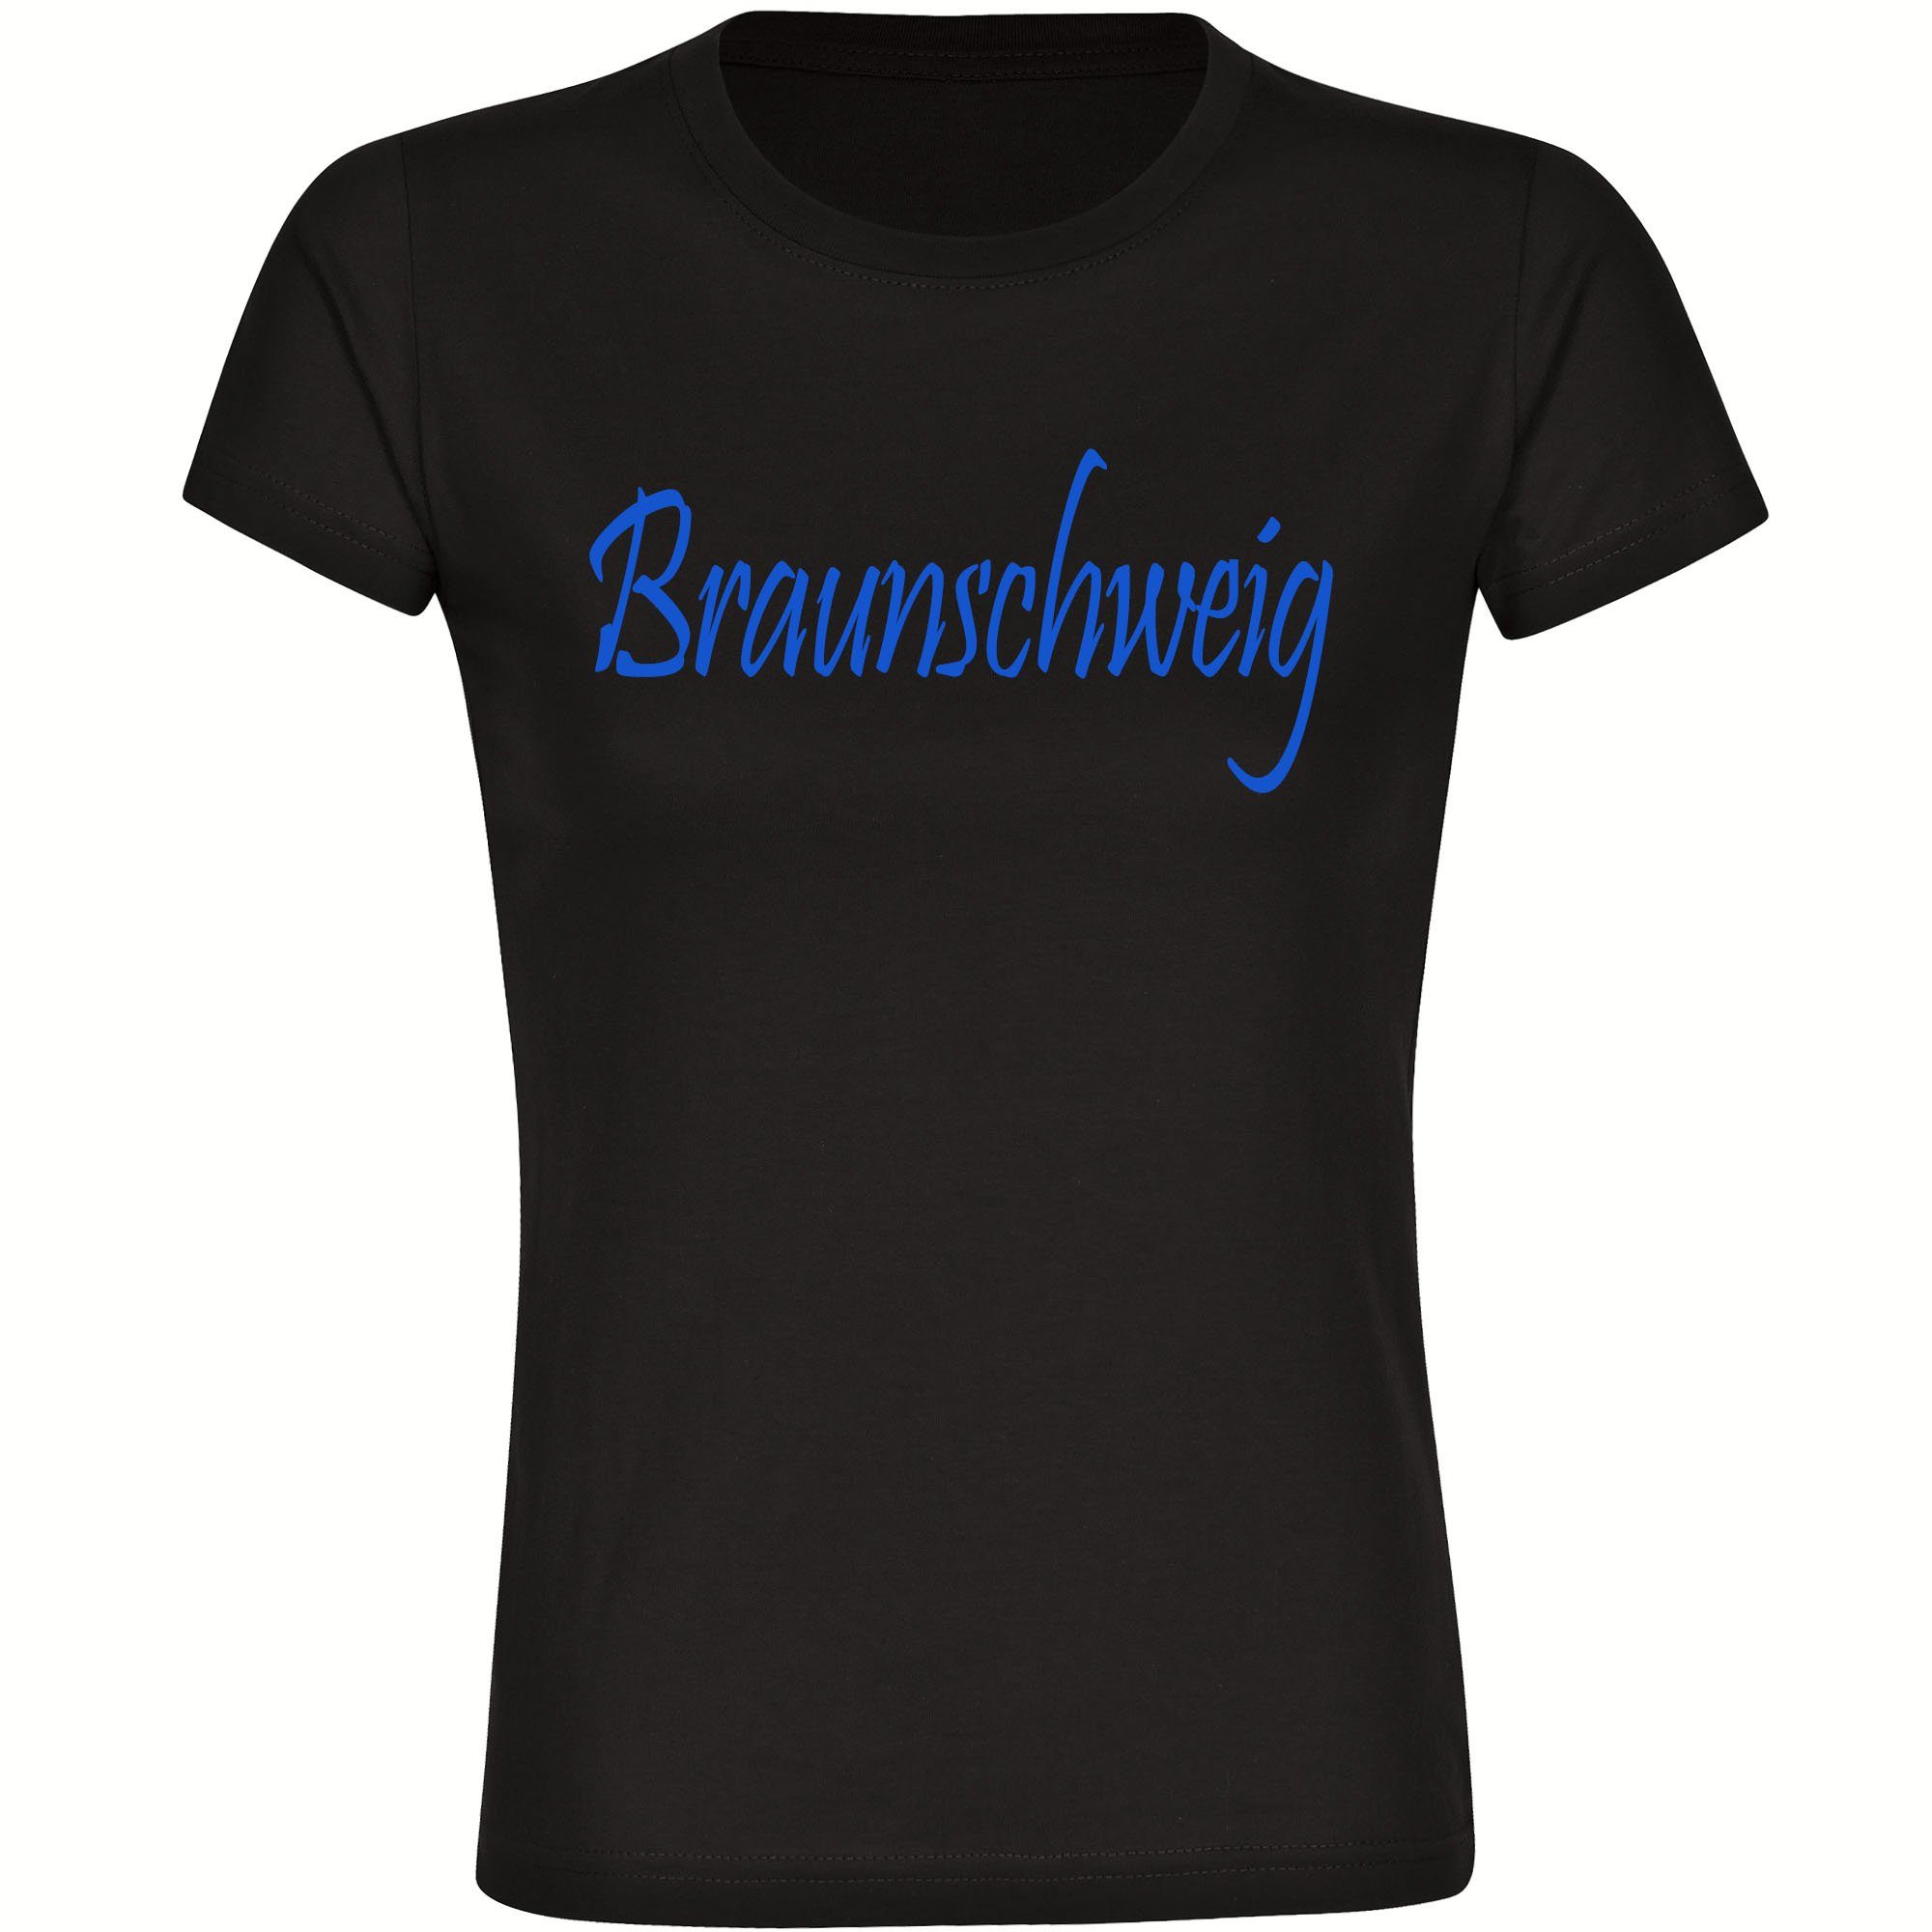 multifanshop T-Shirt Damen Braunschweig - Schriftzug - Frauen